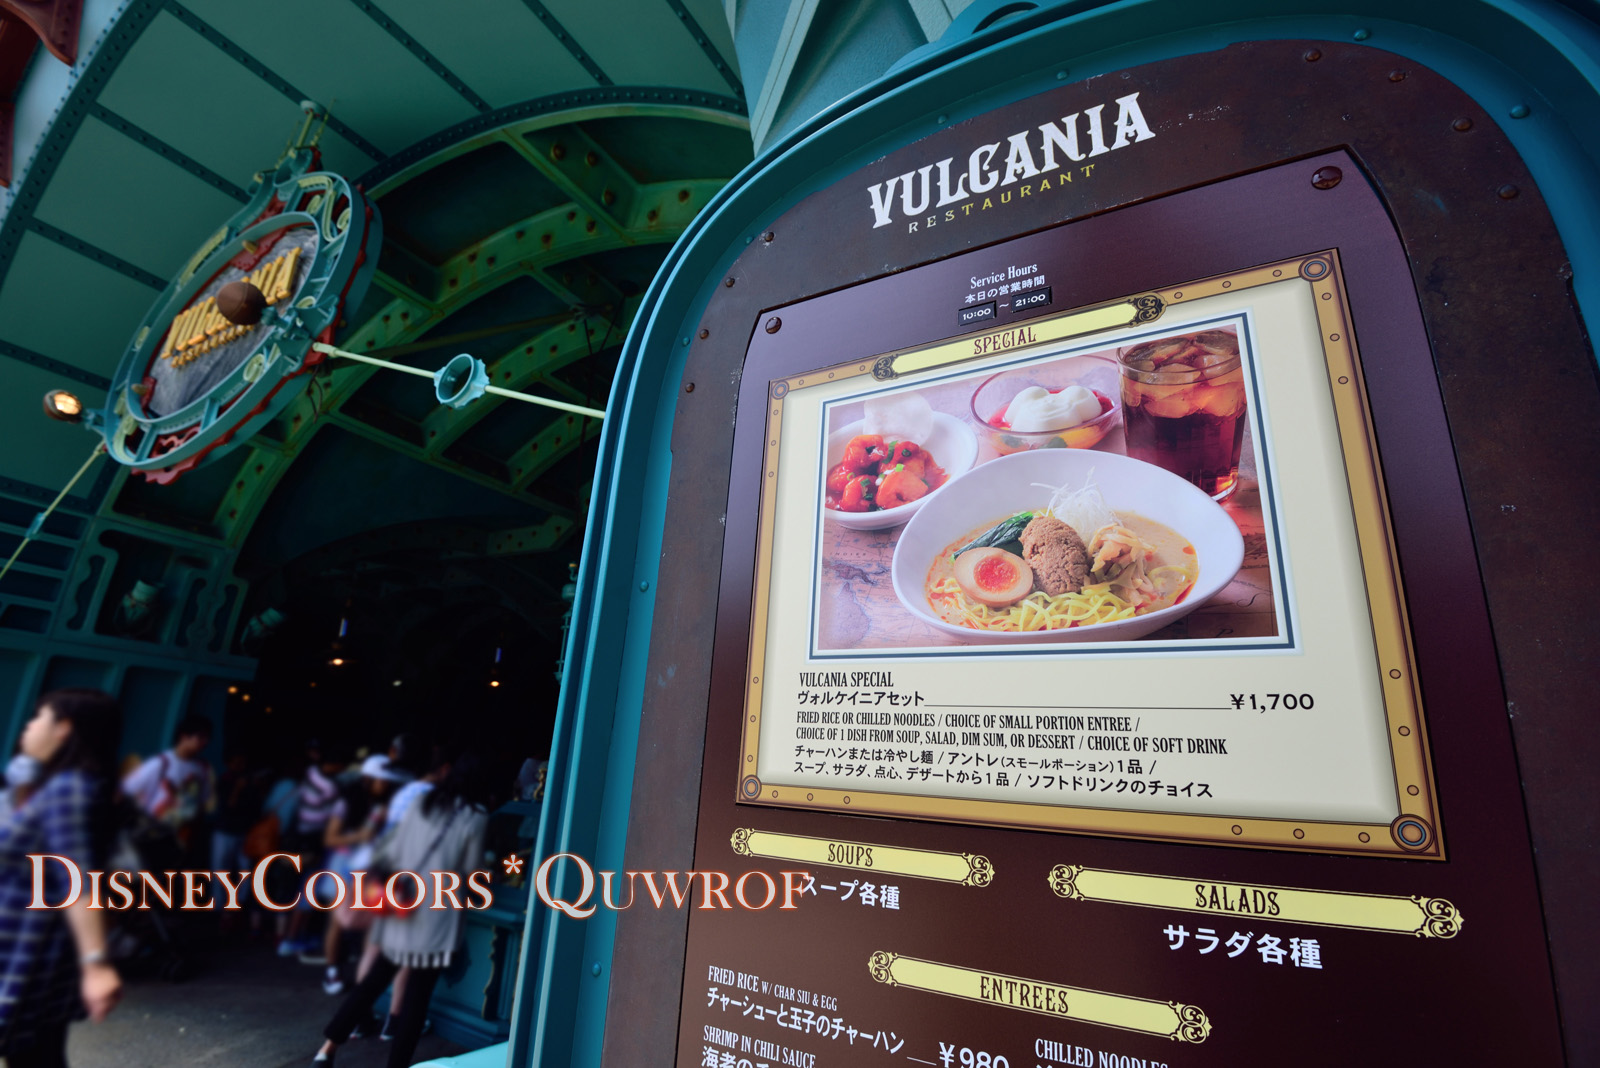 ディズニーシーに 冷やし 担担麺が登場 ヴォルケイニア レストラン02 Disney Colors Blog